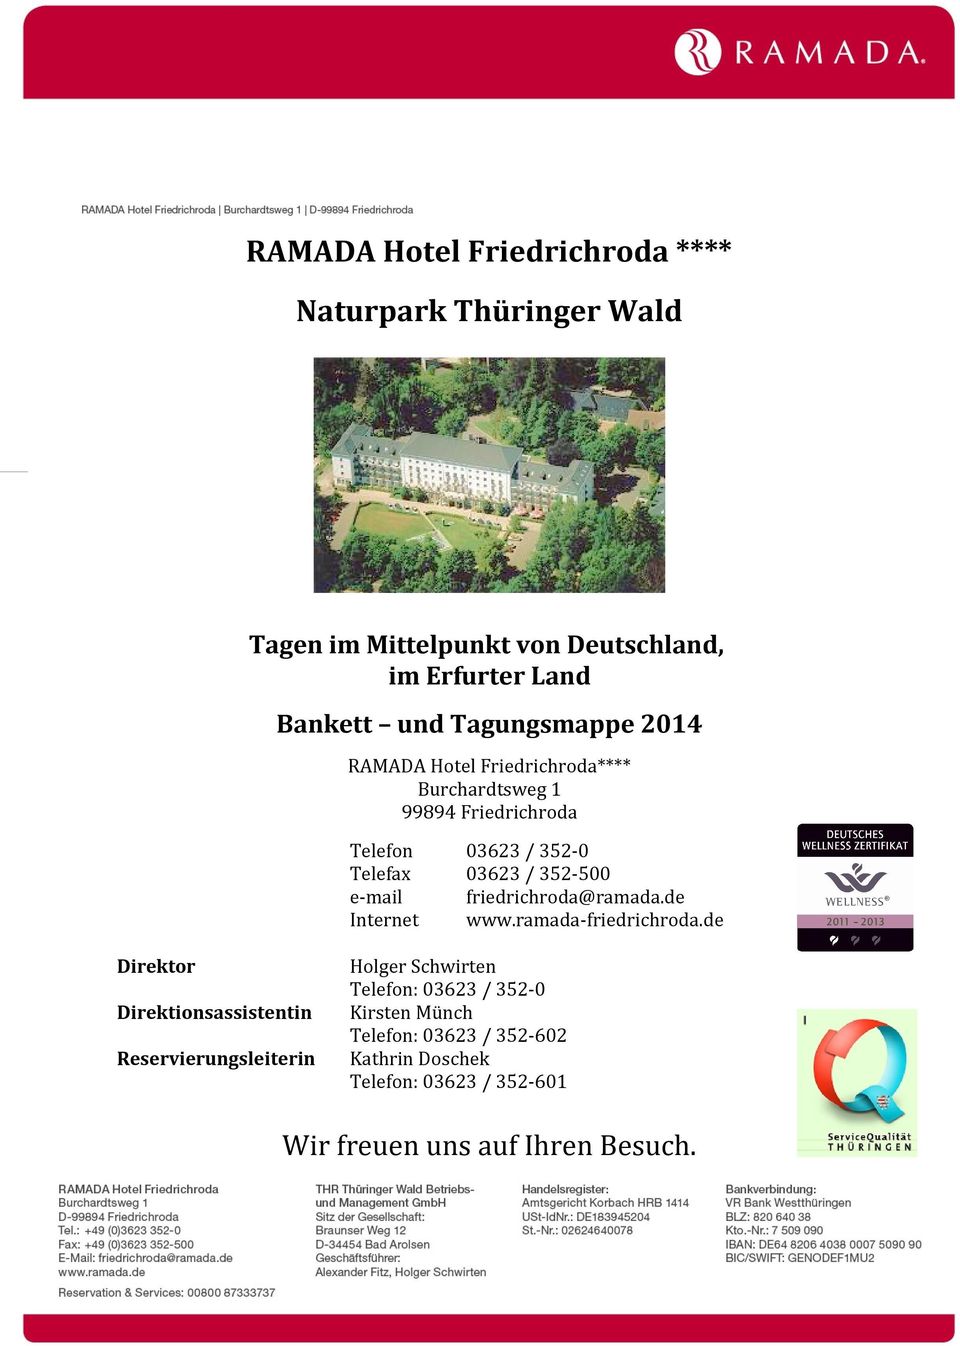 e-mail friedrichroda@ramada.de Internet www.ramada-friedrichroda.